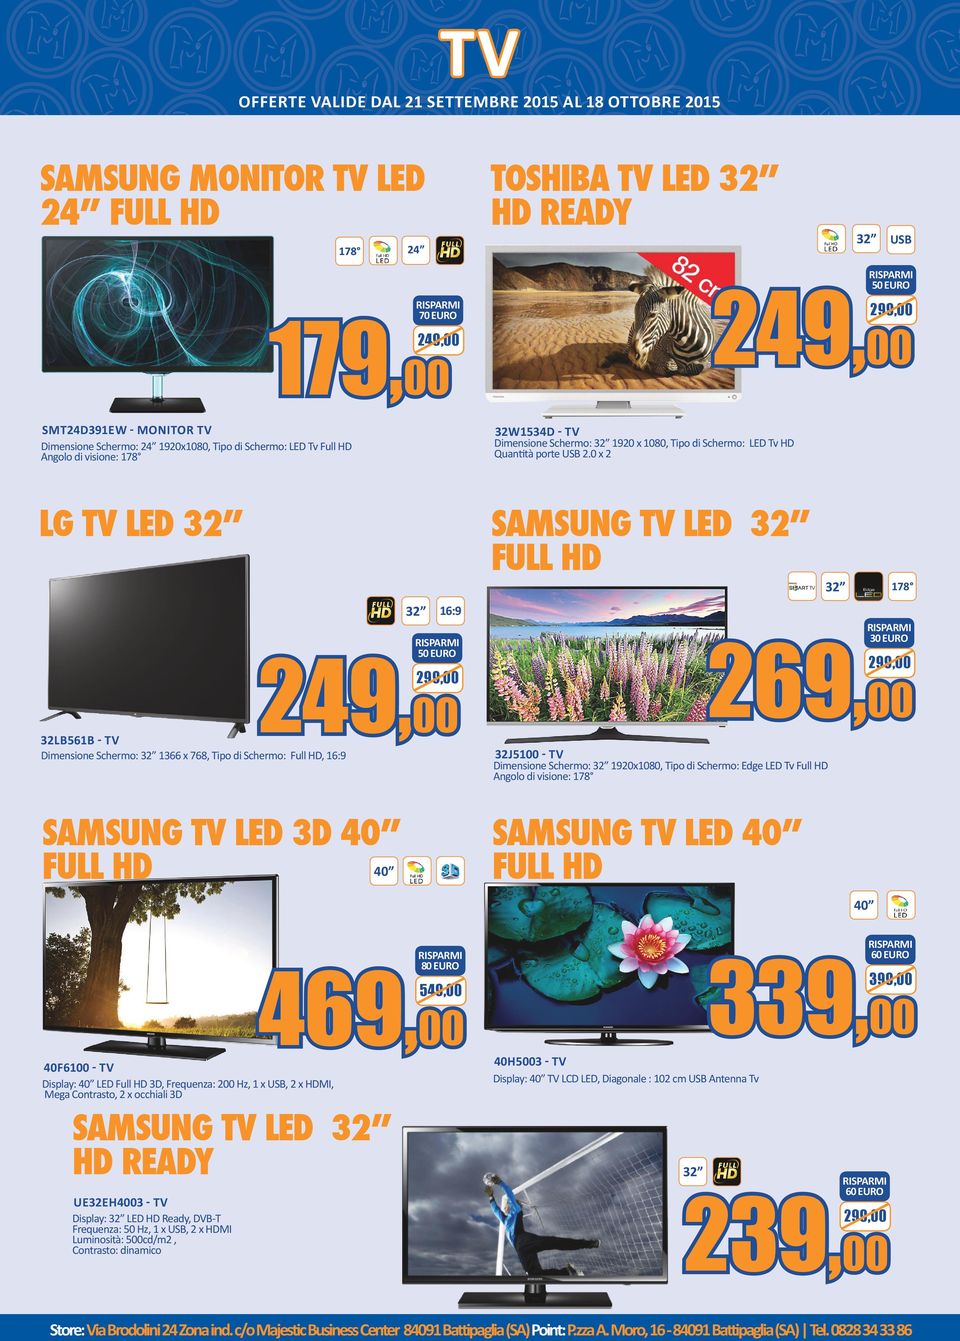 0 x 2 LG TV LED 32 SAMSUNG TV LED 32 32 16:9 249,00 SAMSUNG TV LED 3D 40 178 269,00 Dimensione Schermo: 32 1366 x 768, Tipo di Schermo: Full HD, 16:9 32 30 EURO 32LB561B - TV 32 USB 32J5100 - TV